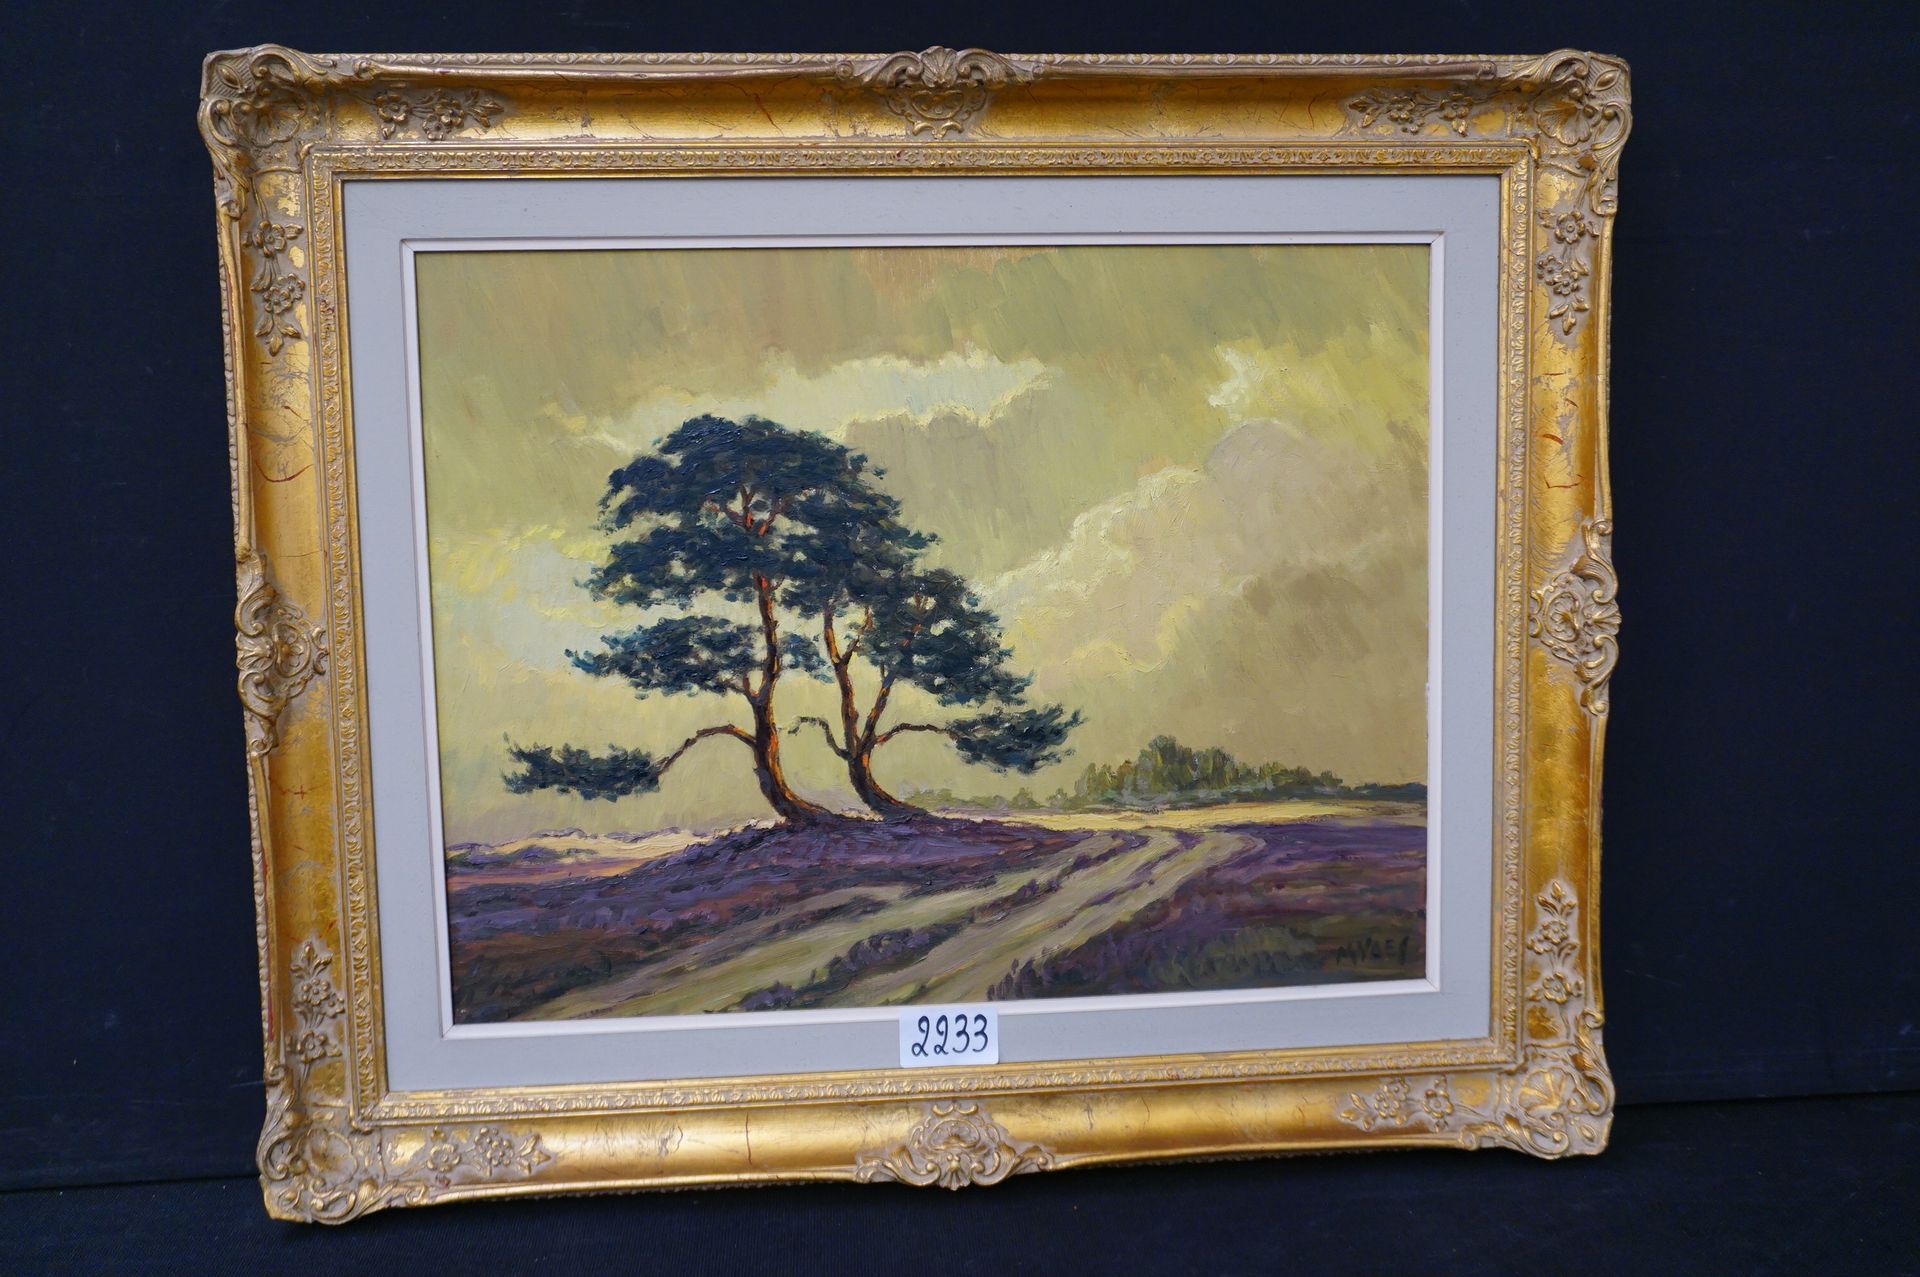 M. VAES "Paesaggio di brughiera" - Olio su tela - Firmato - 50 x 65 cm